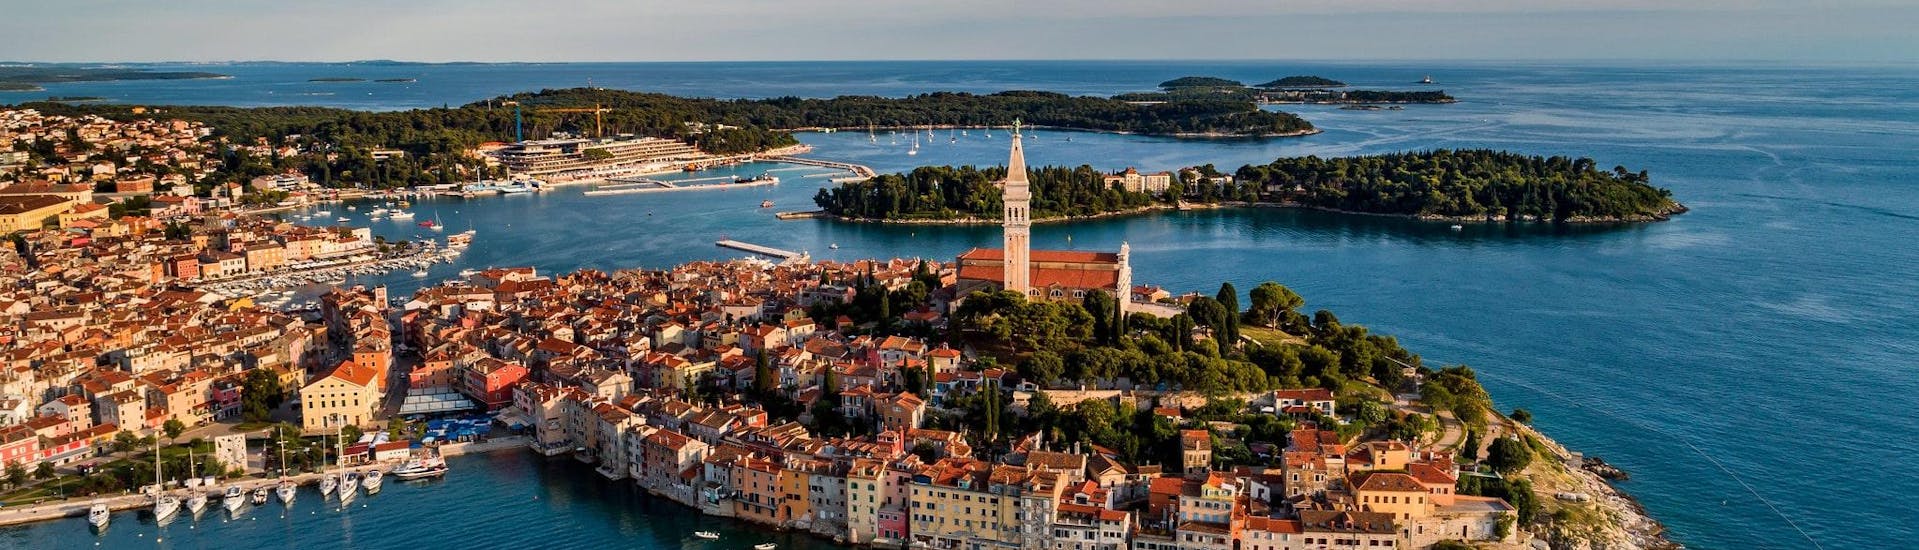 Blick auf die malerische Stadt Rovinj, die ein beliebtes Ziel für Bootstouren in Istrien ist.